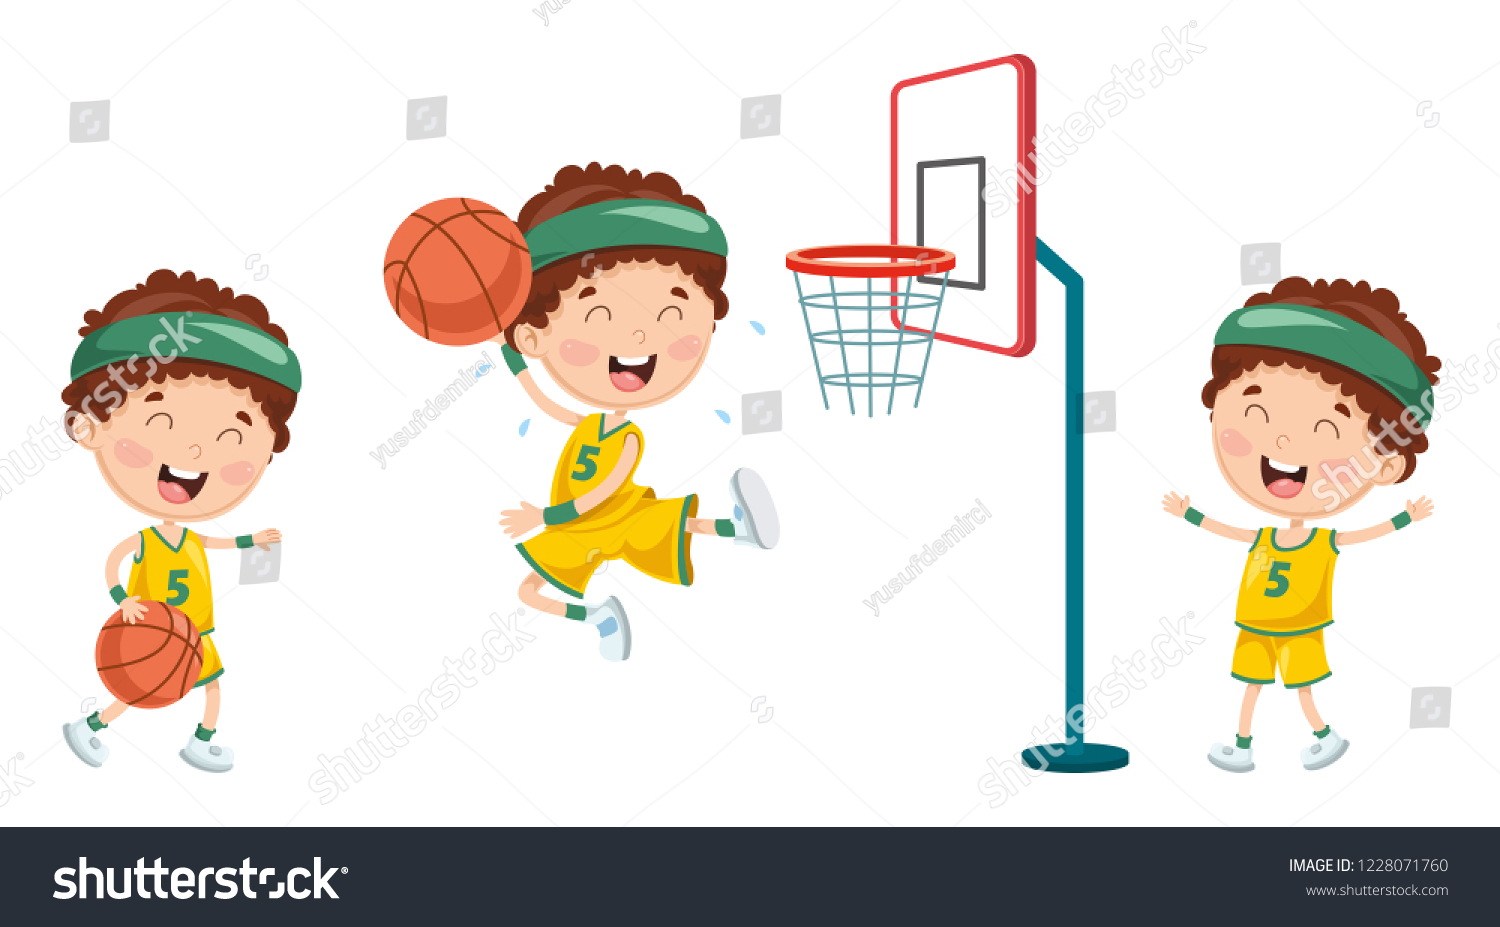 Картинка как мальчики играют в баскетбол